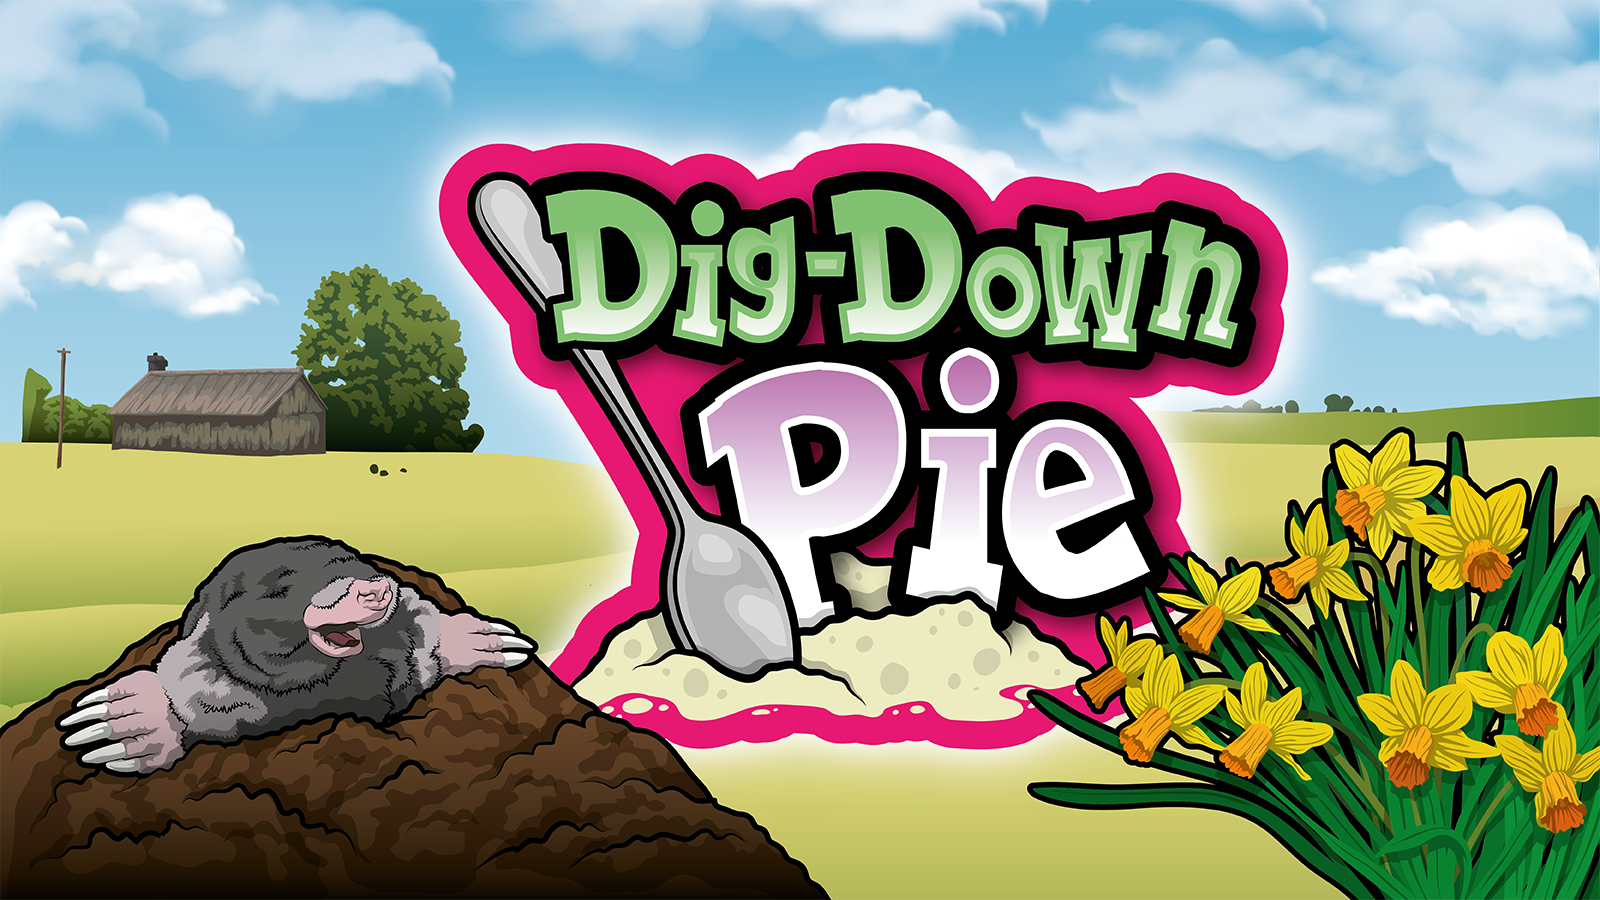 Dig down pie